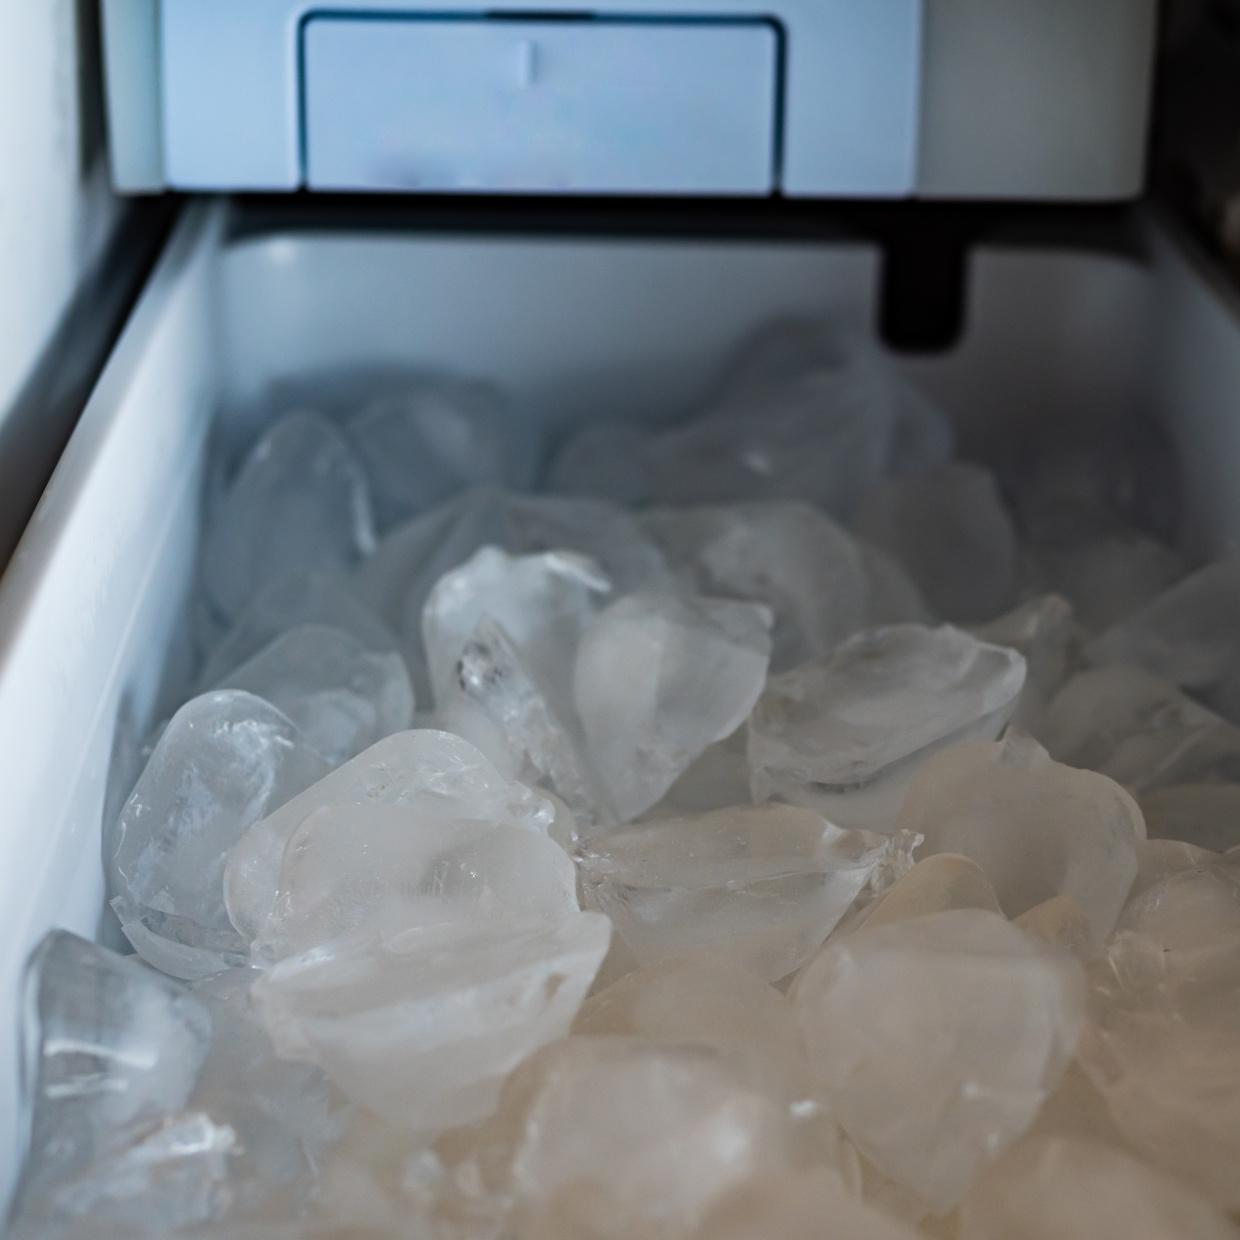 「製氷機」掃除してますか？キレイな氷をつくるための“かんたん製氷機掃除術”